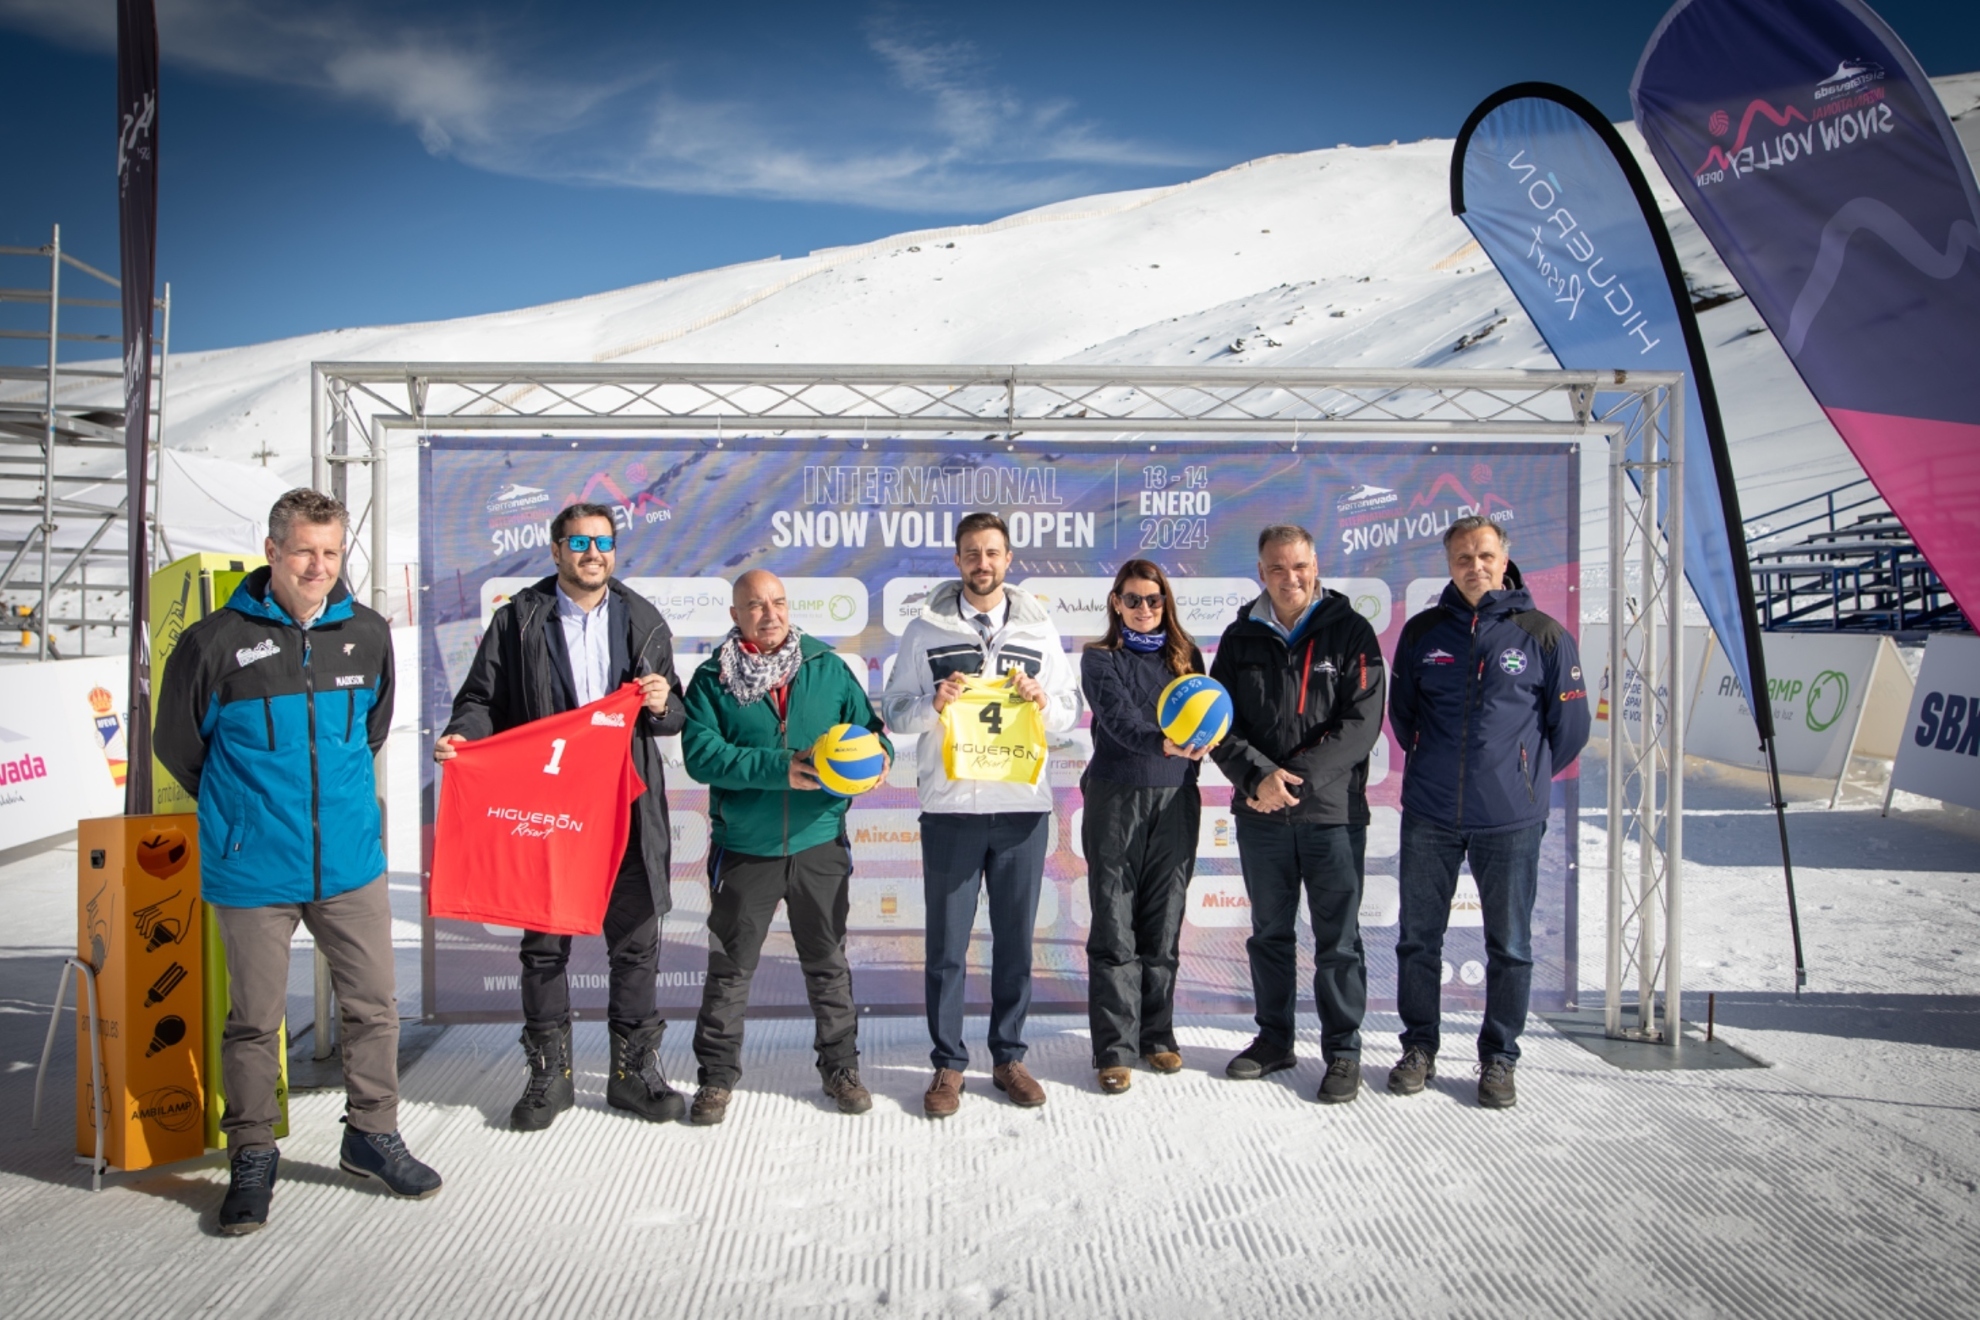 El snow volley llega a Espaa: presentado el primer evento internacional en Sierra Nevada